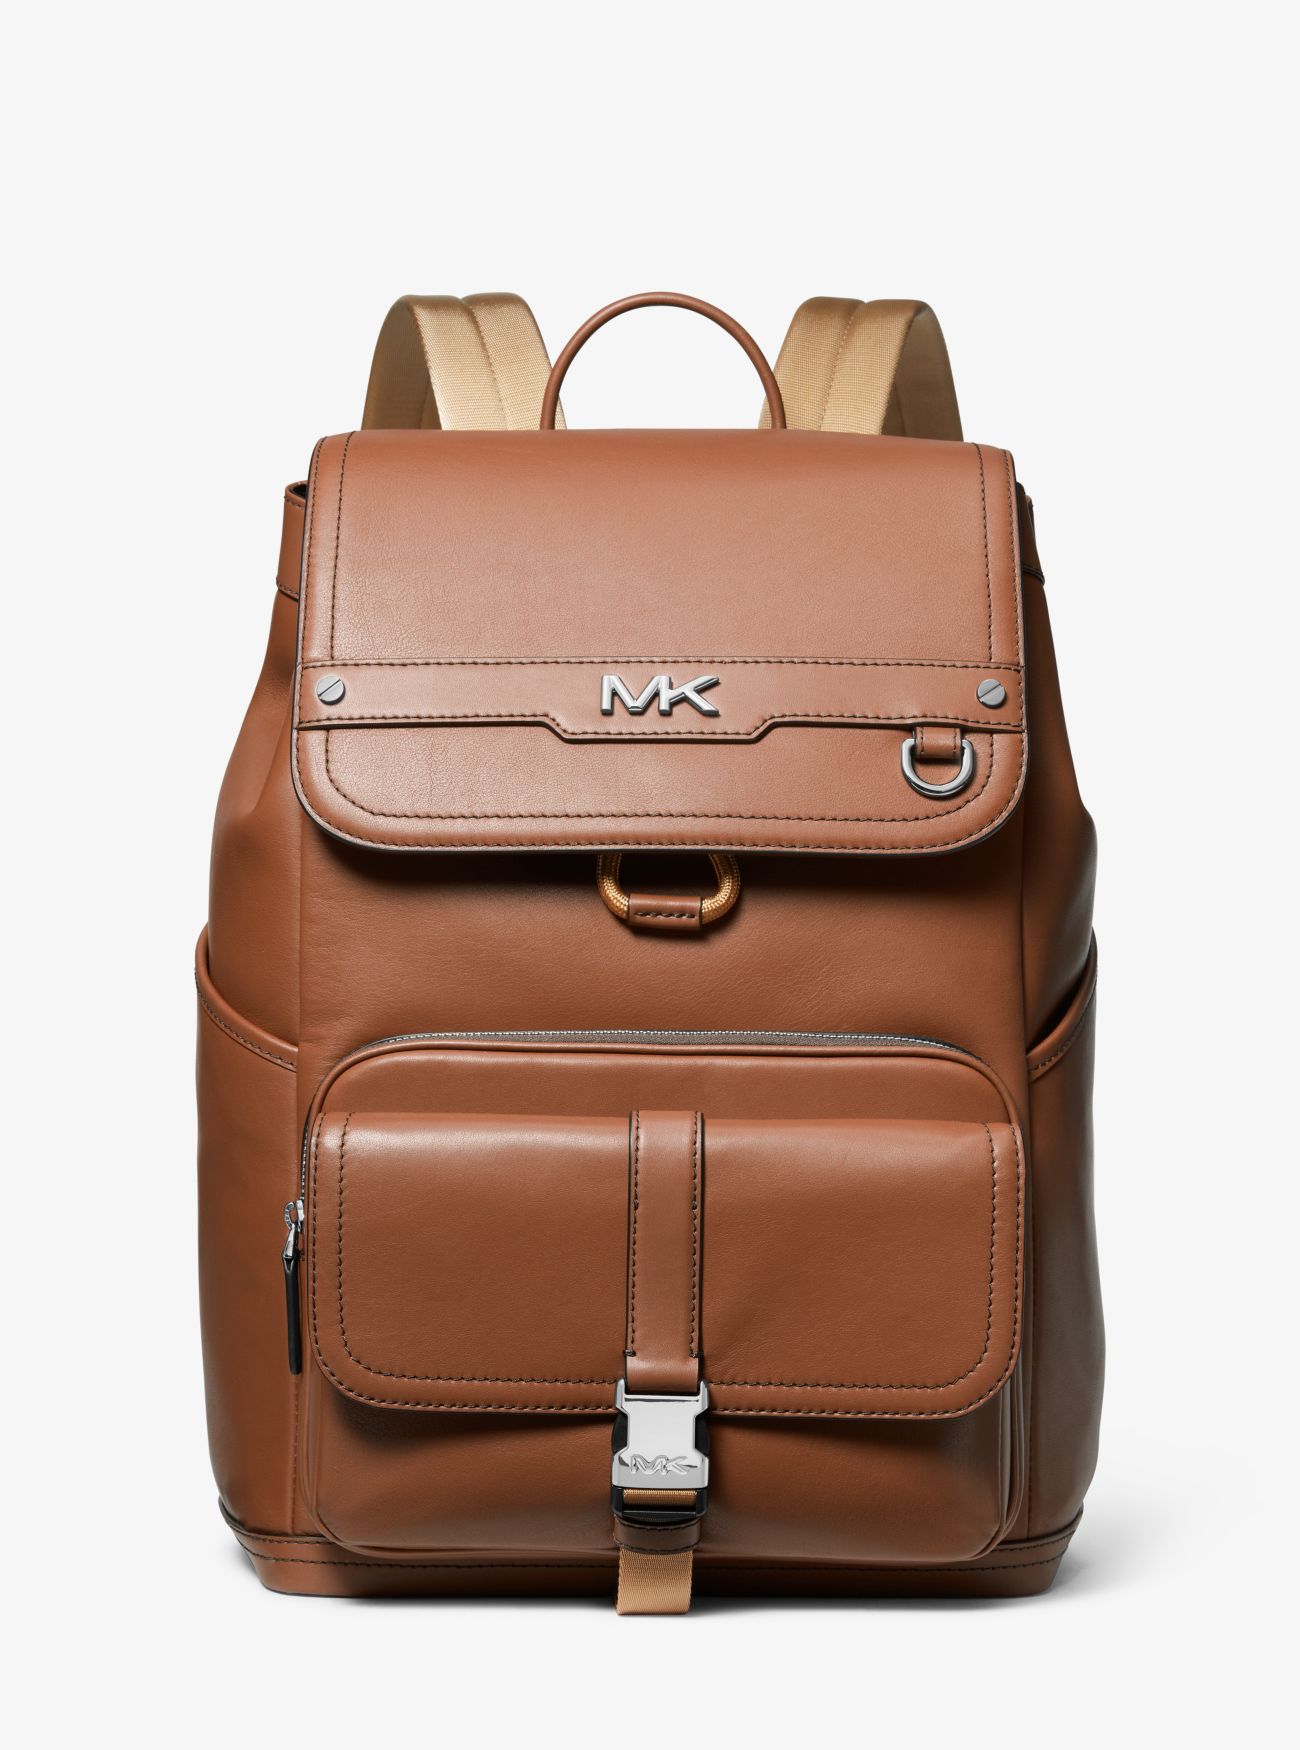 MK Varick Leather Backpack - Luggage Brown - Michael Kors